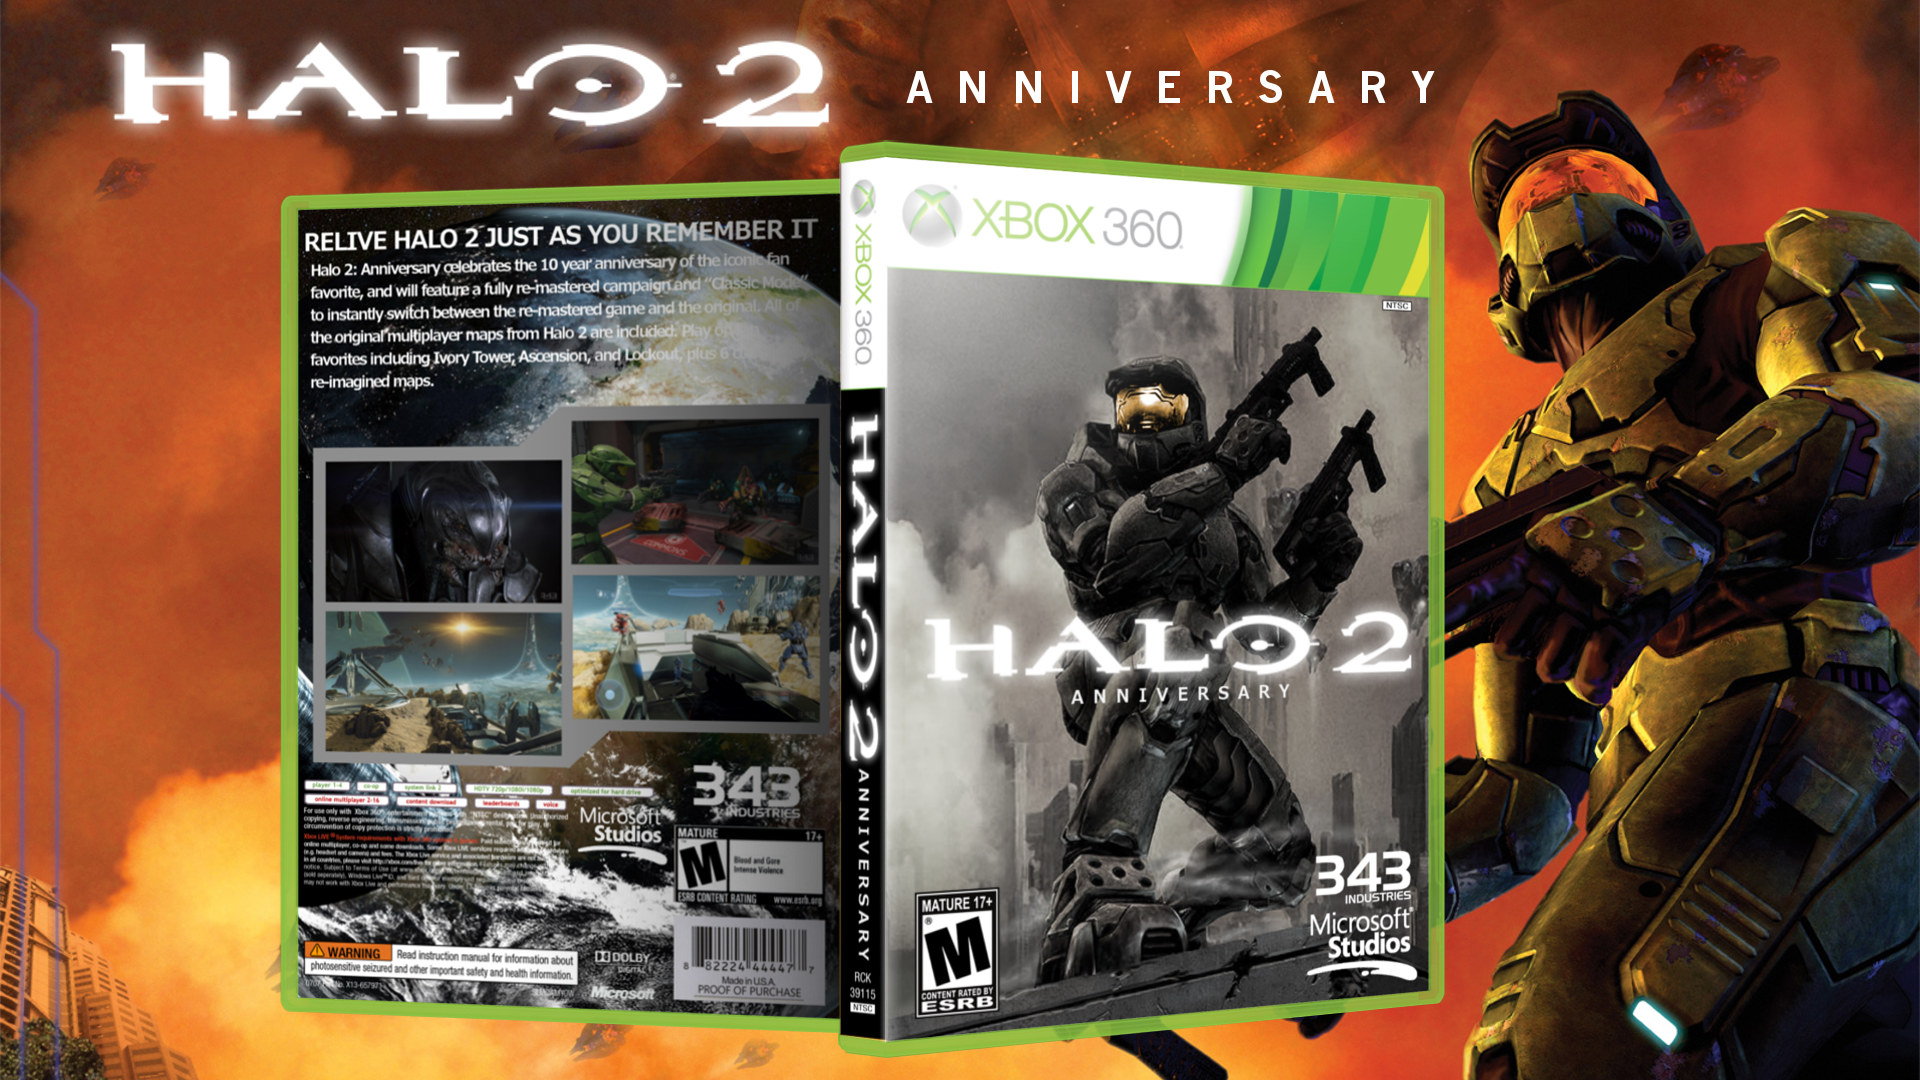 Halo 2: Anniversary box cover